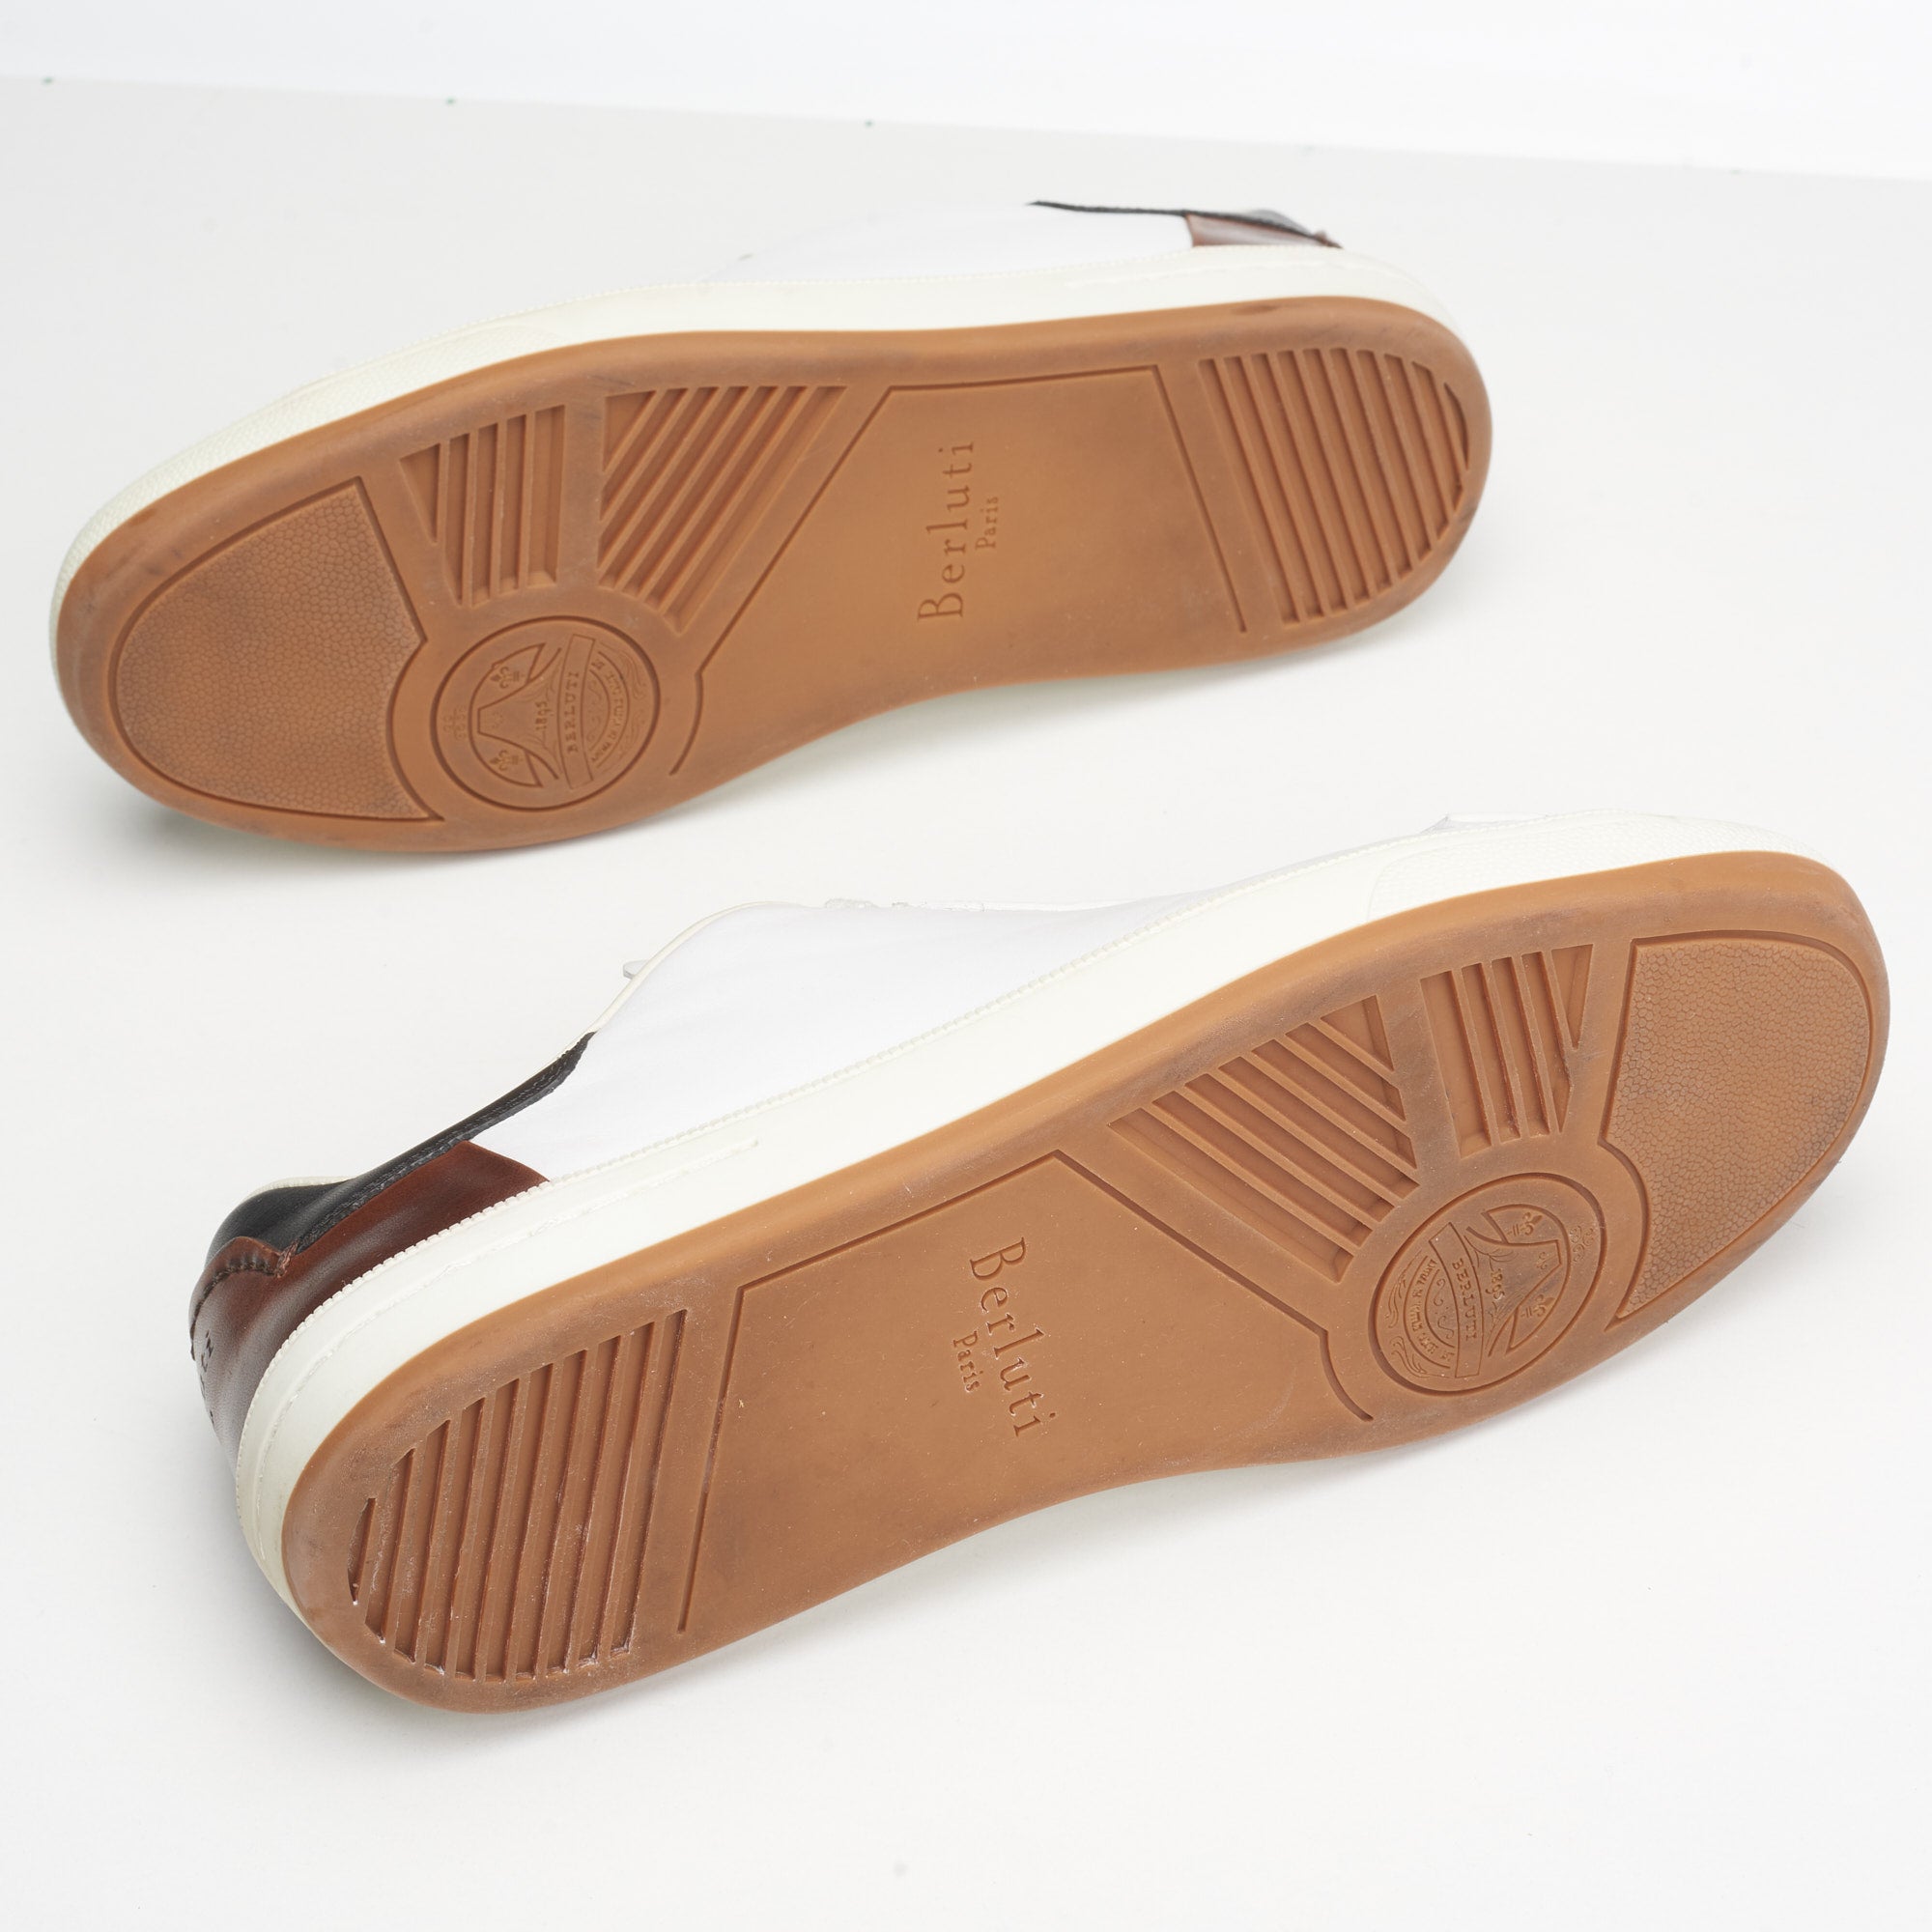 Buy XHUGOY Leather lace-ups 5 Eyelet Plain Toe Tan Police Shoes- 5 UK at  Amazon.in